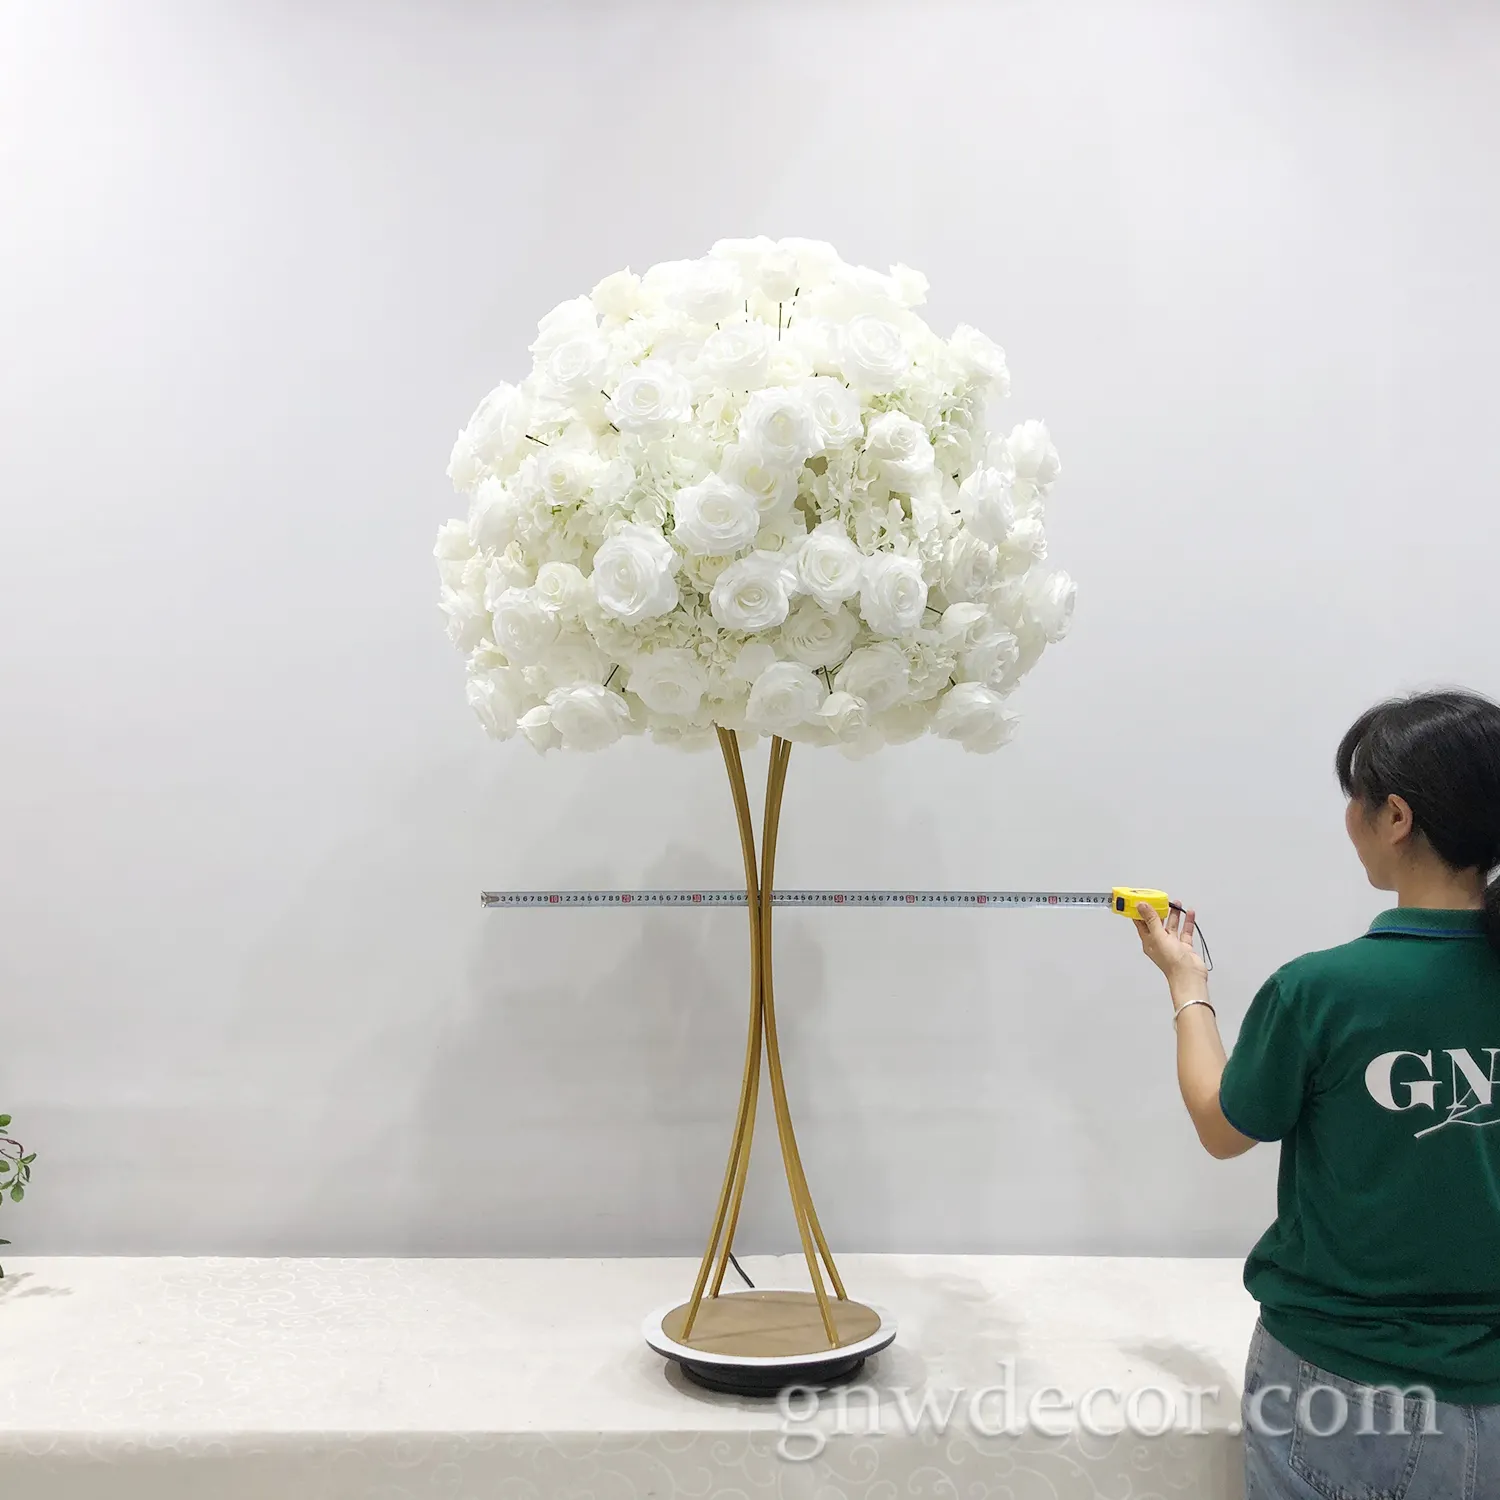 GNW shenzhen fornitore di nozze baciare palla fiore ballo della rosa decorazione della tavola idee speciale di disegno fiori artificiali palla